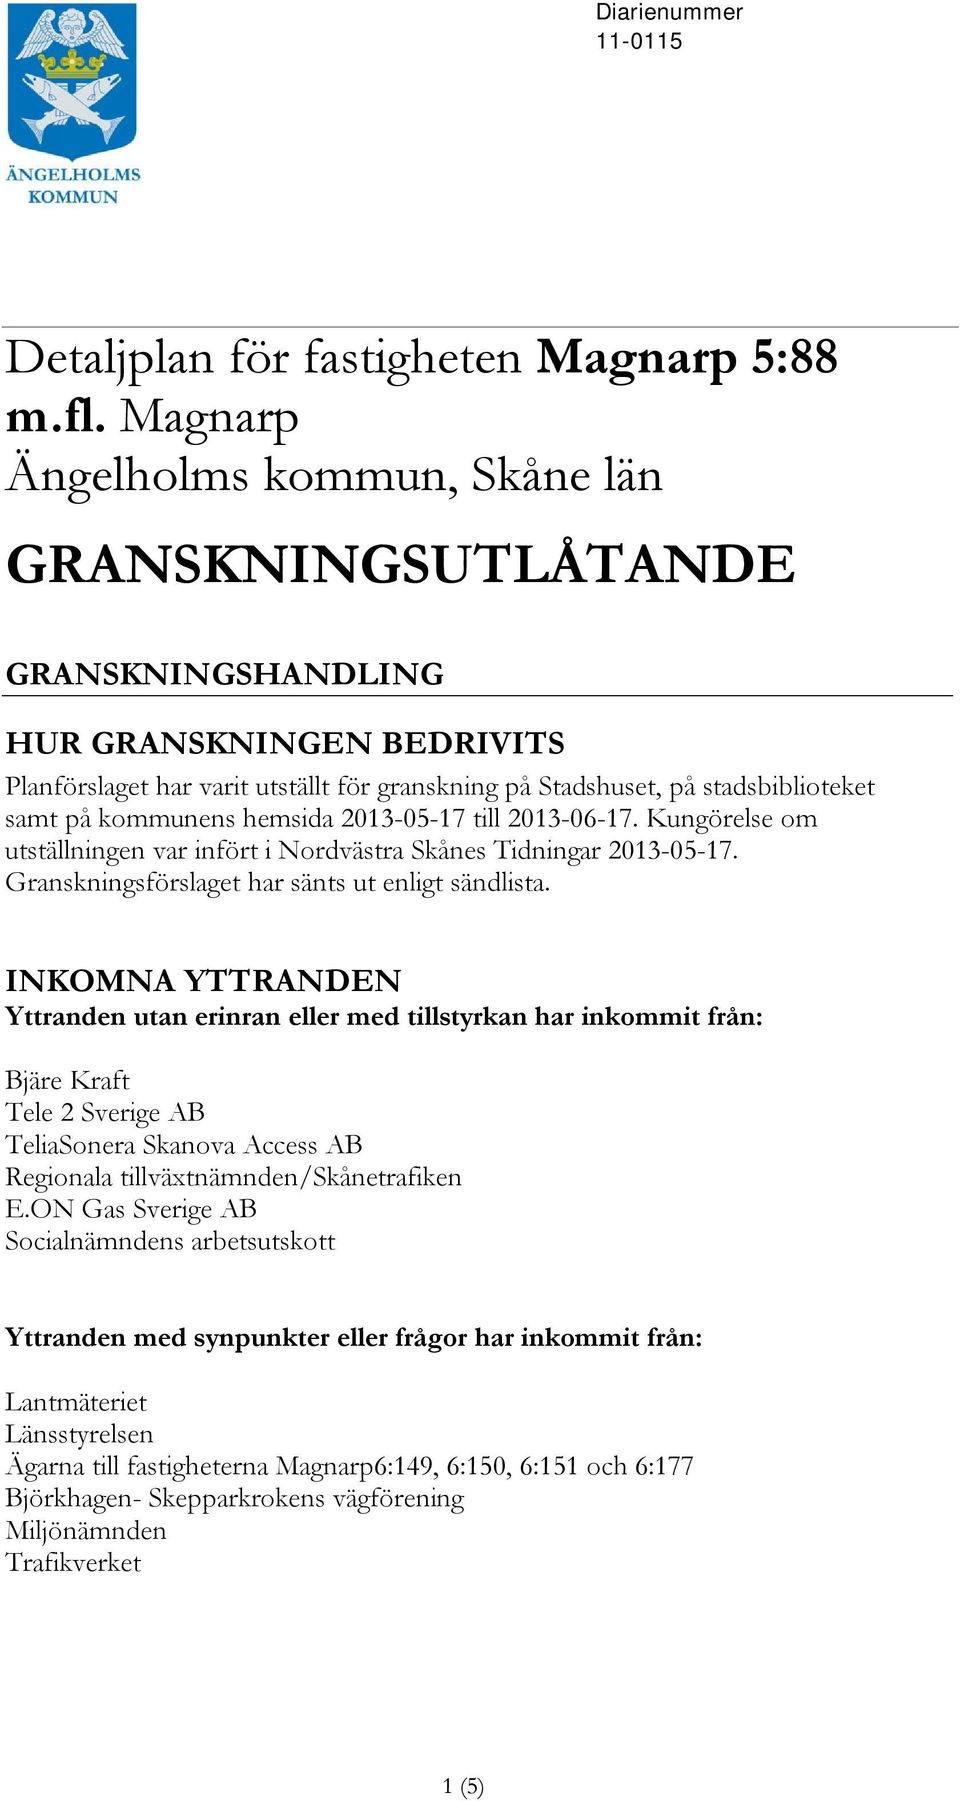 kommunens hemsida 2013-05-17 till 2013-06-17. Kungörelse om utställningen var infört i Nordvästra Skånes Tidningar 2013-05-17. Granskningsförslaget har sänts ut enligt sändlista.